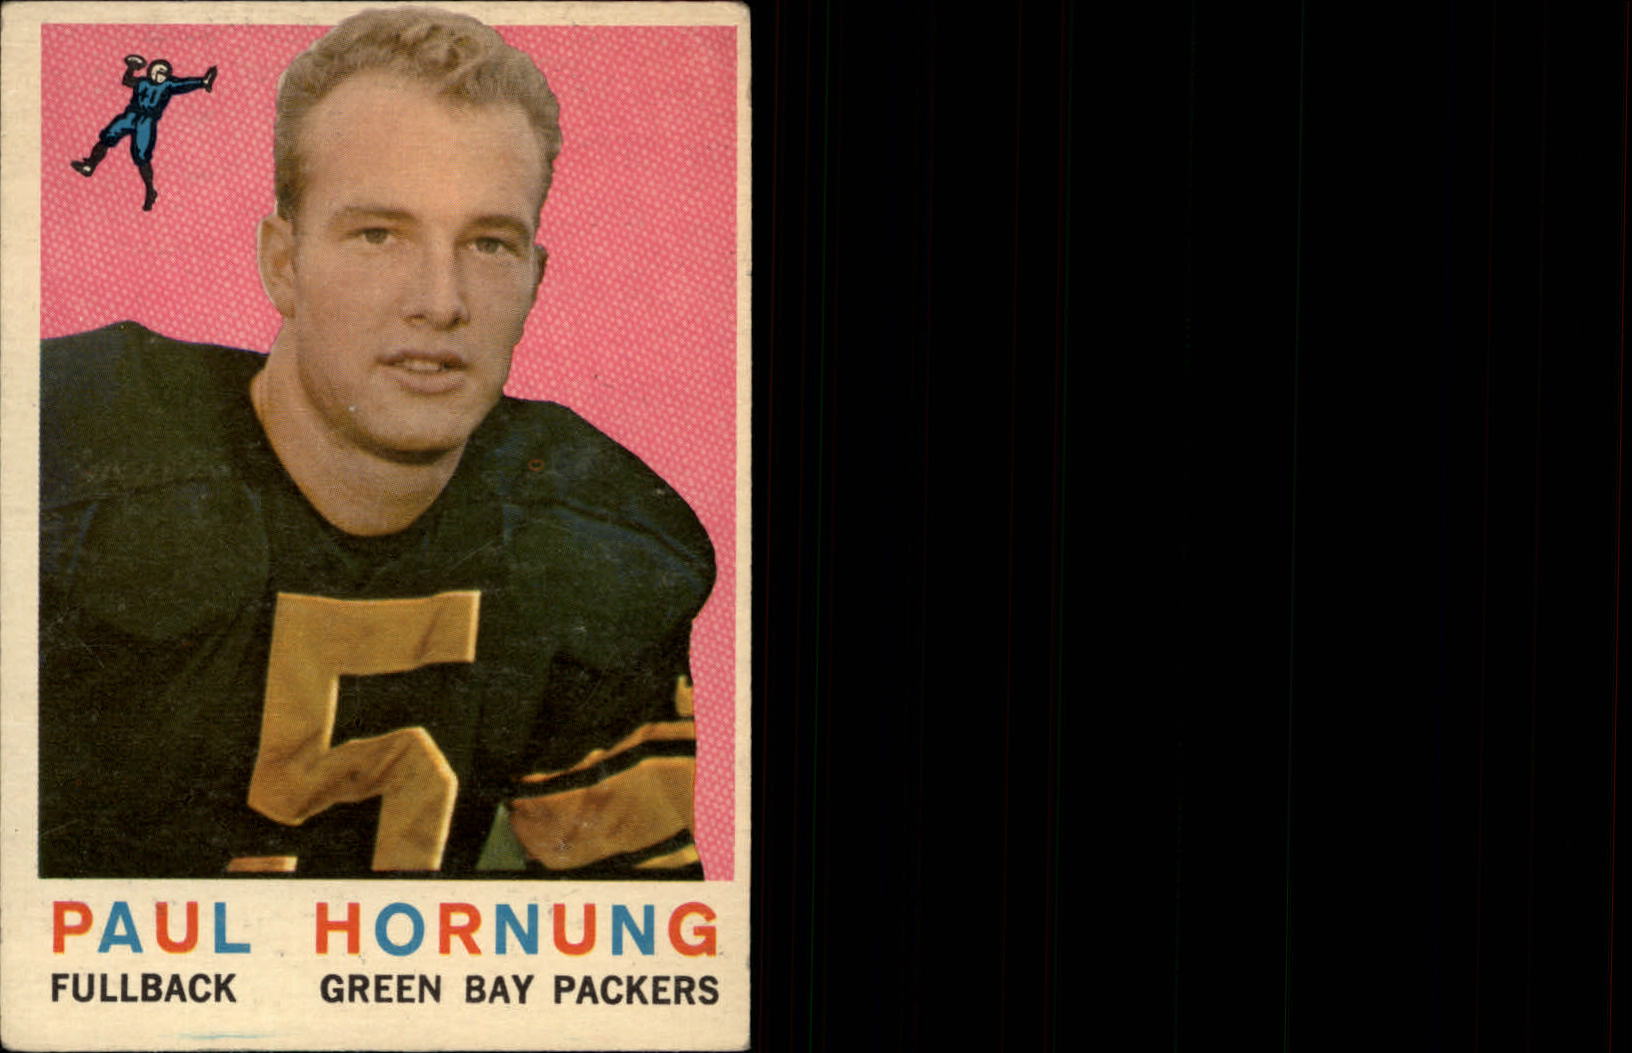 1959 Topps #82 Paul Hornung